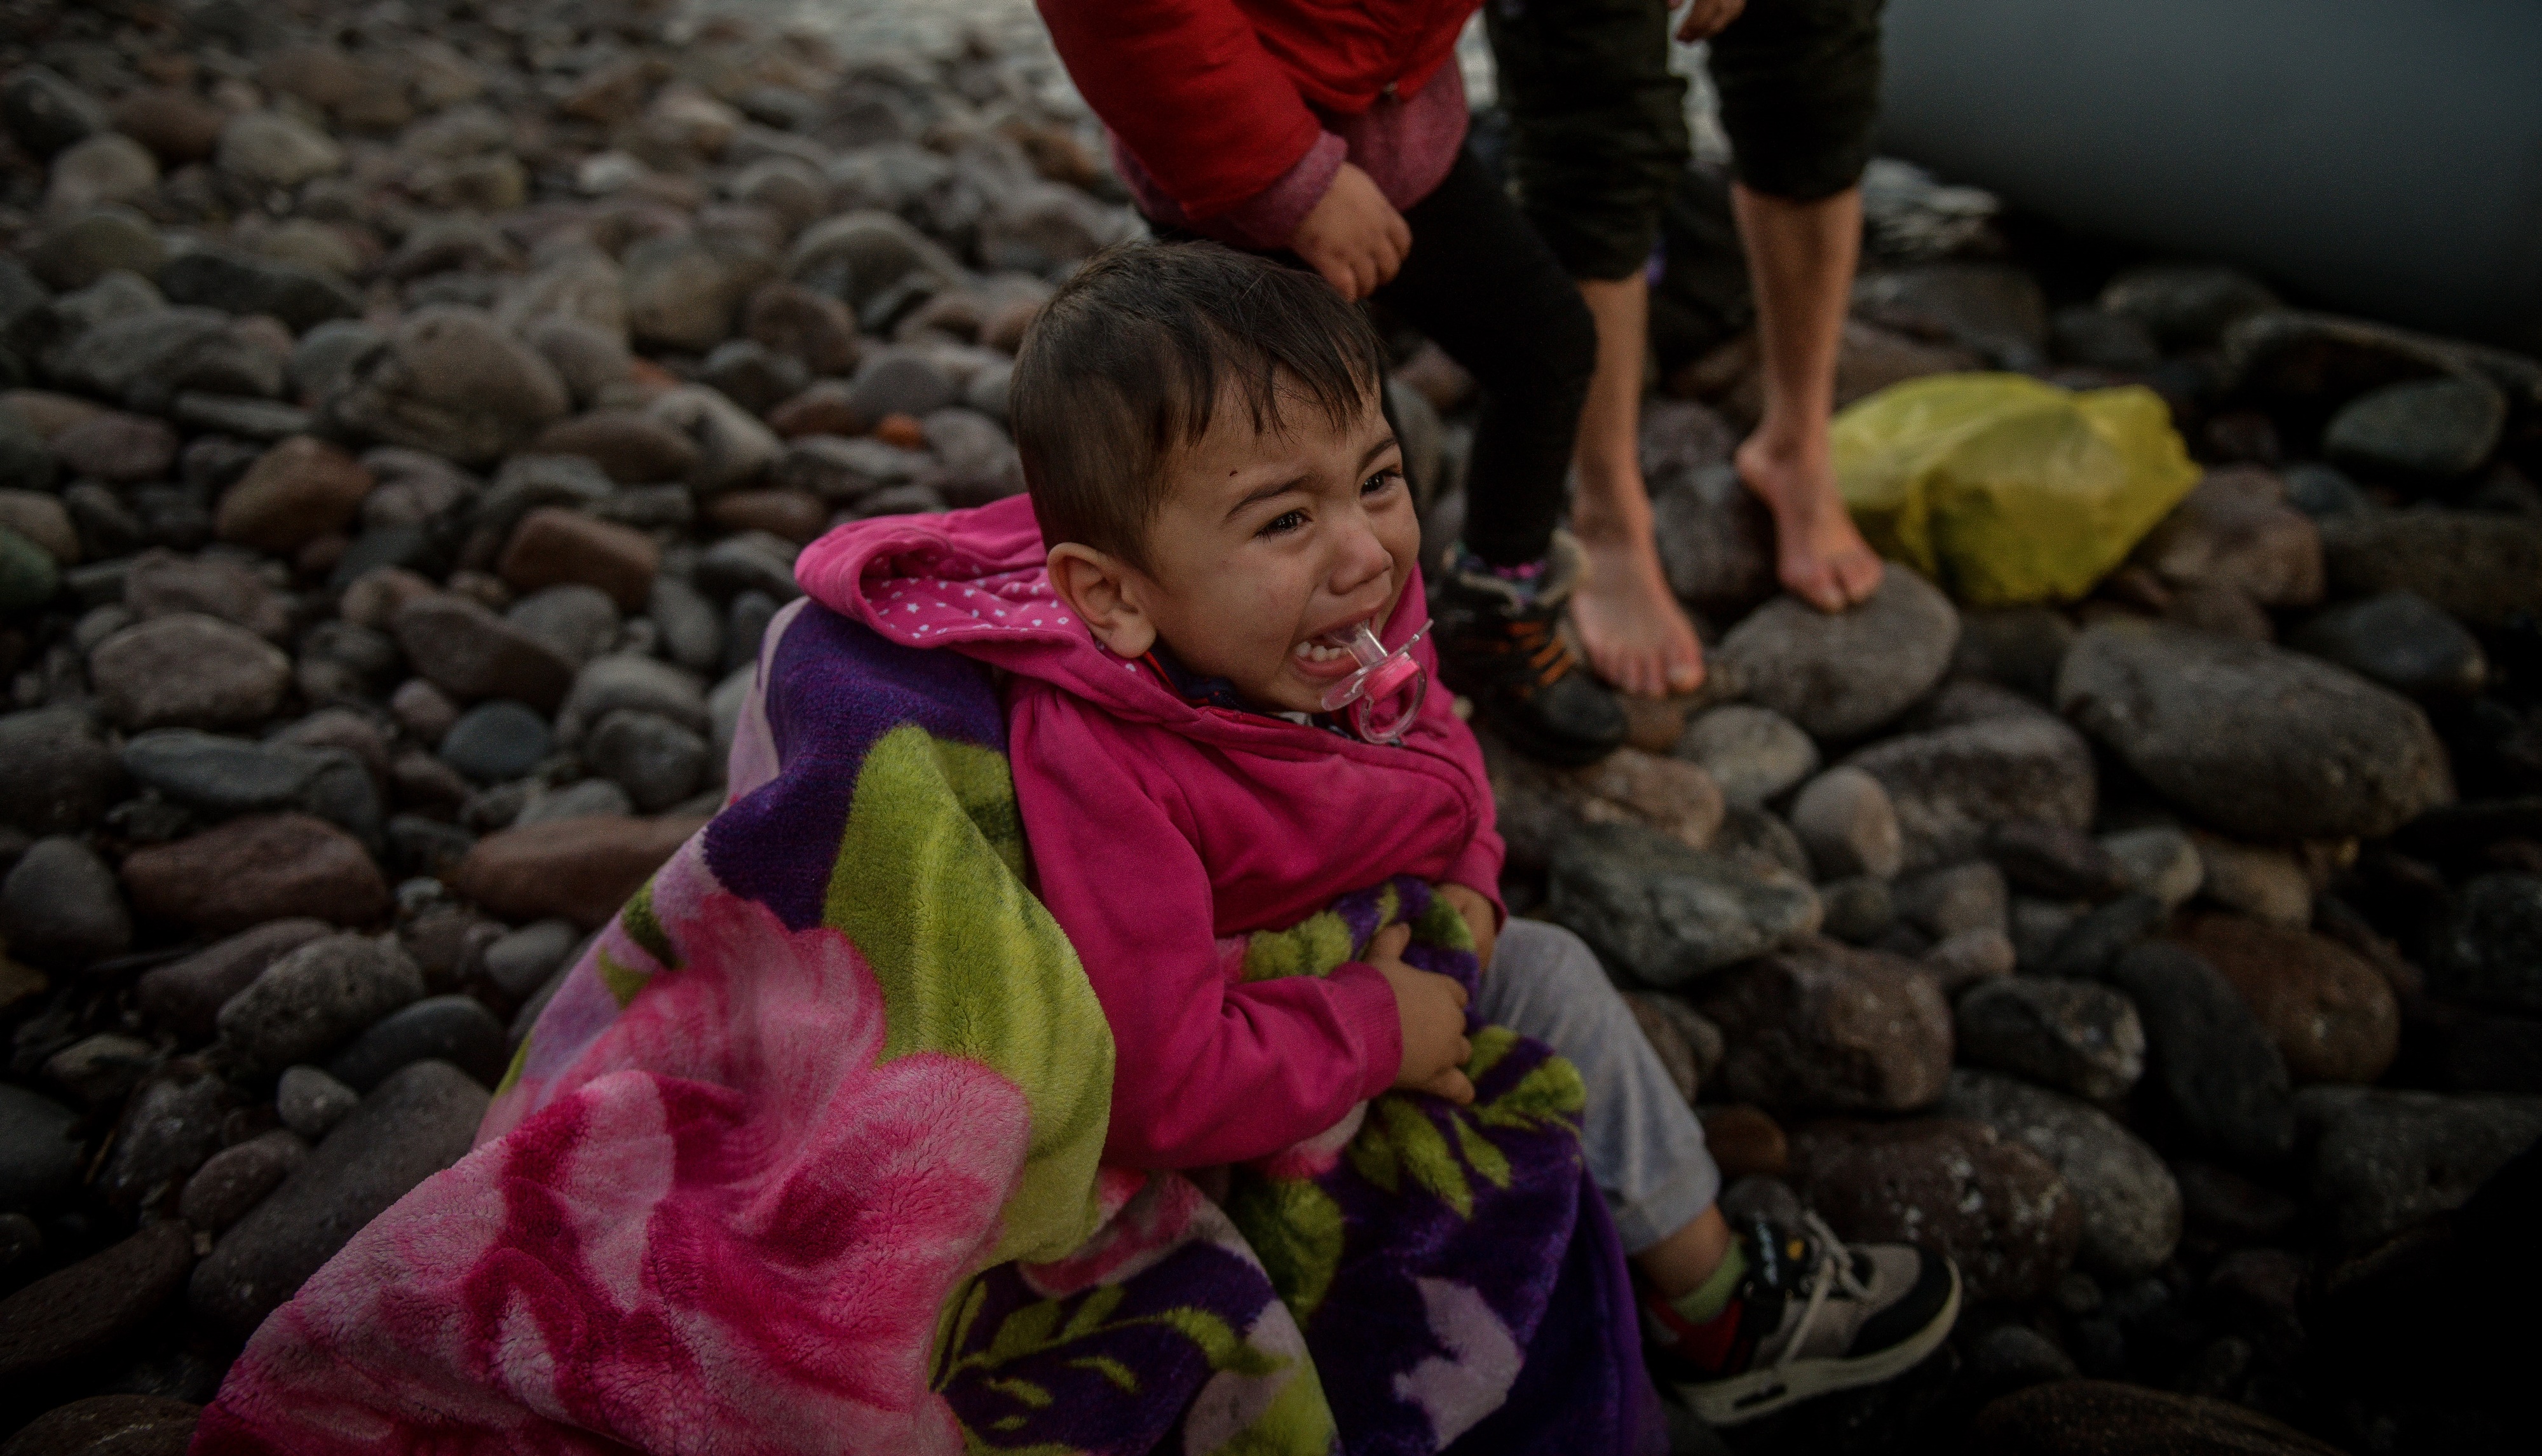 Λέσβος μετανάστες: Βούλιαξαν τη βάρκα τους – Ένα παιδί νεκρό